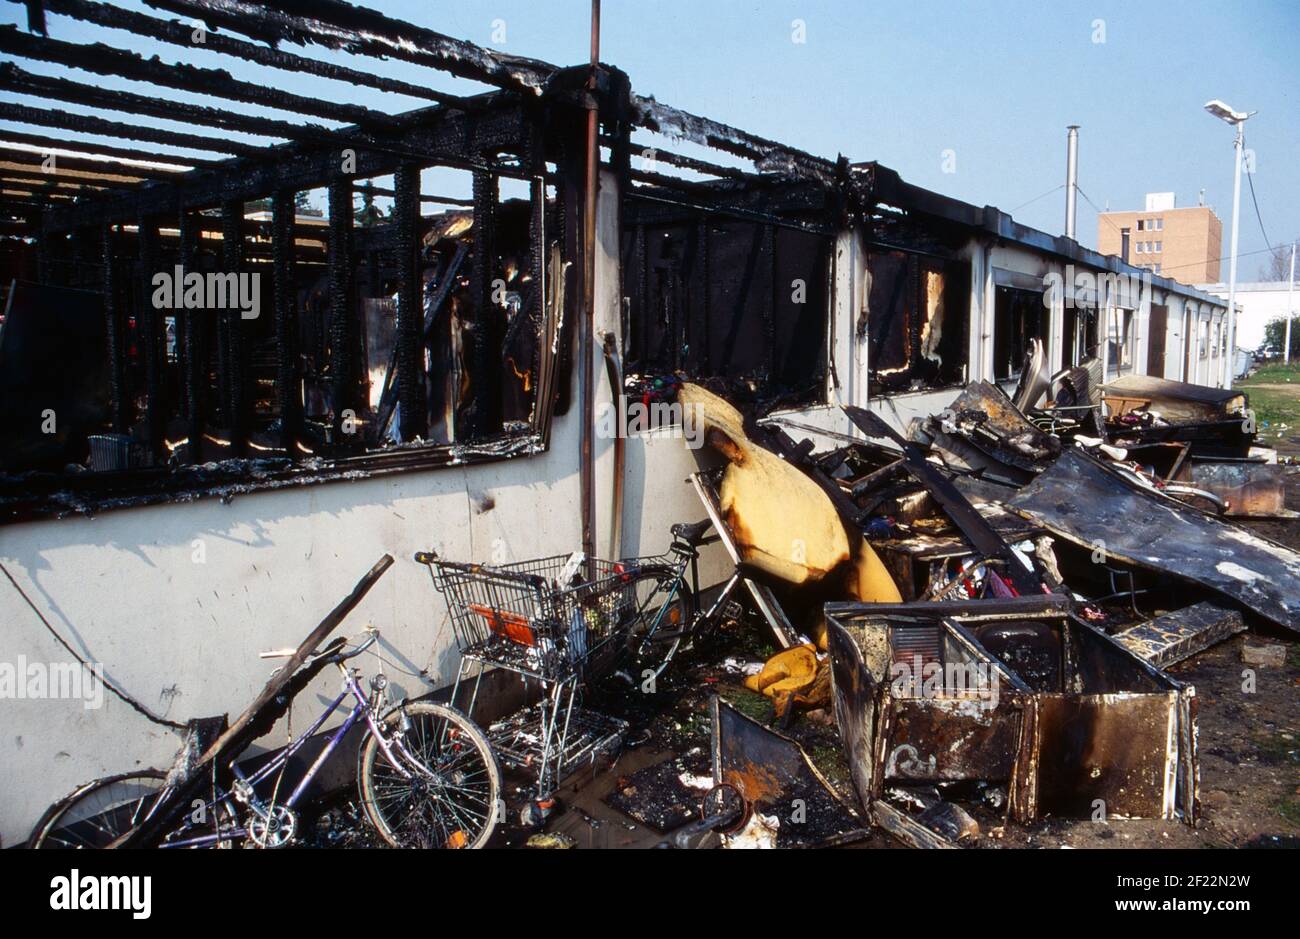 Überreste von Habseligkeiten am Tag nach einem Feuer in einem Asylbewerberheim in Neuss, Deutschland 1997. Stock Photo